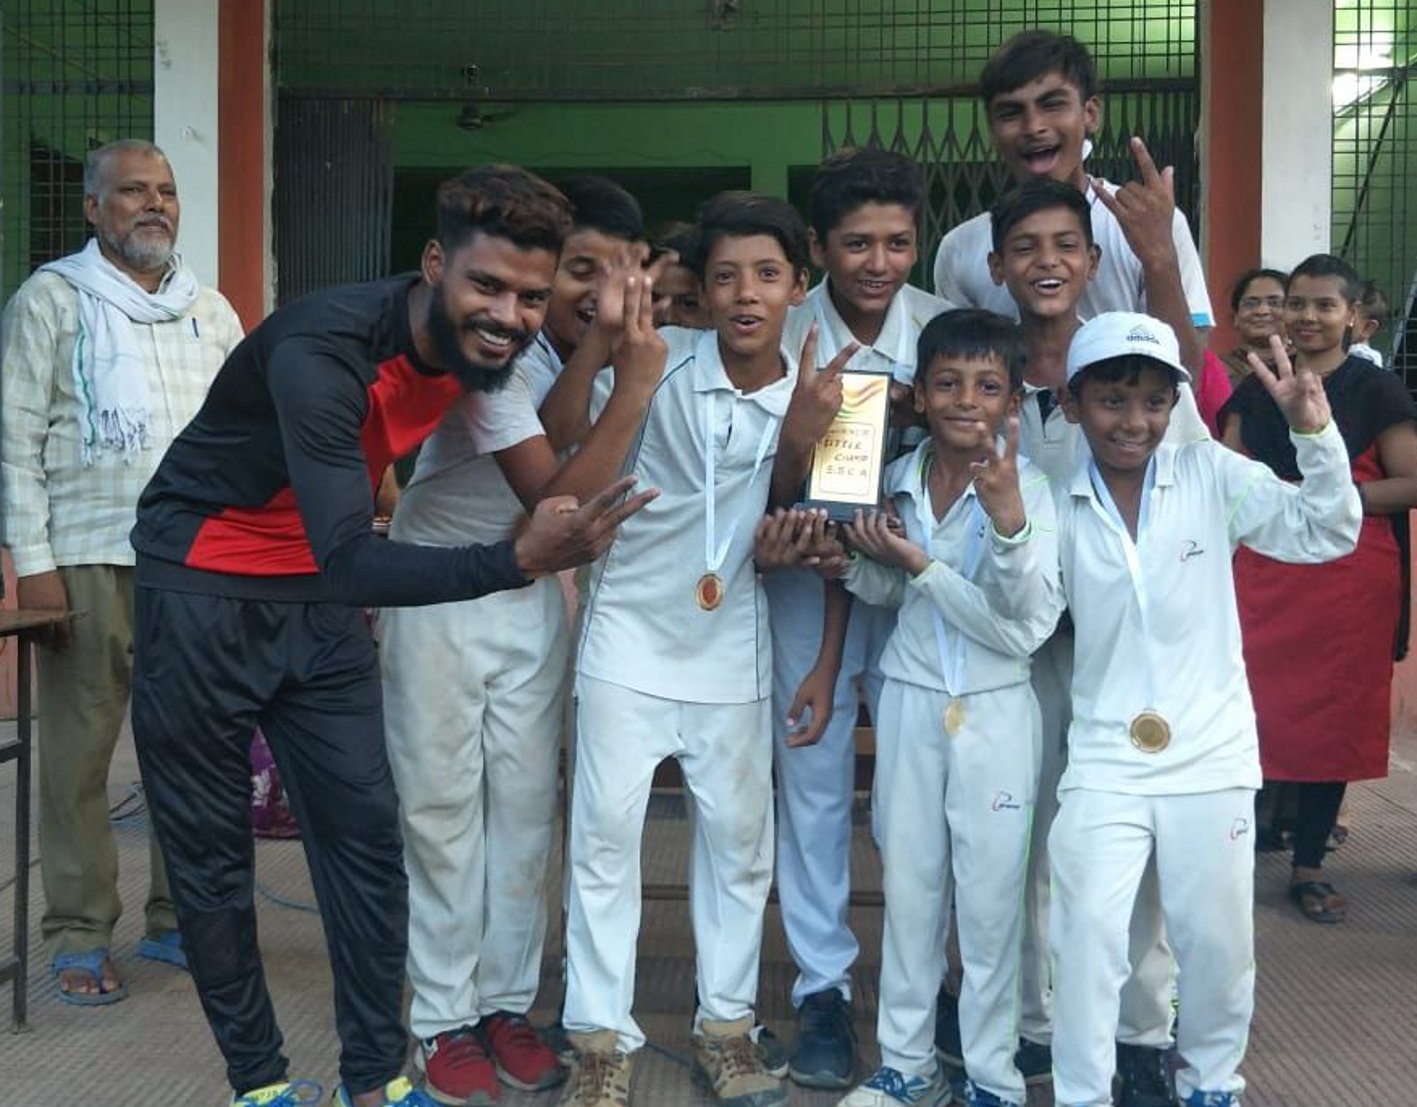 Lion team wins final of Cricket